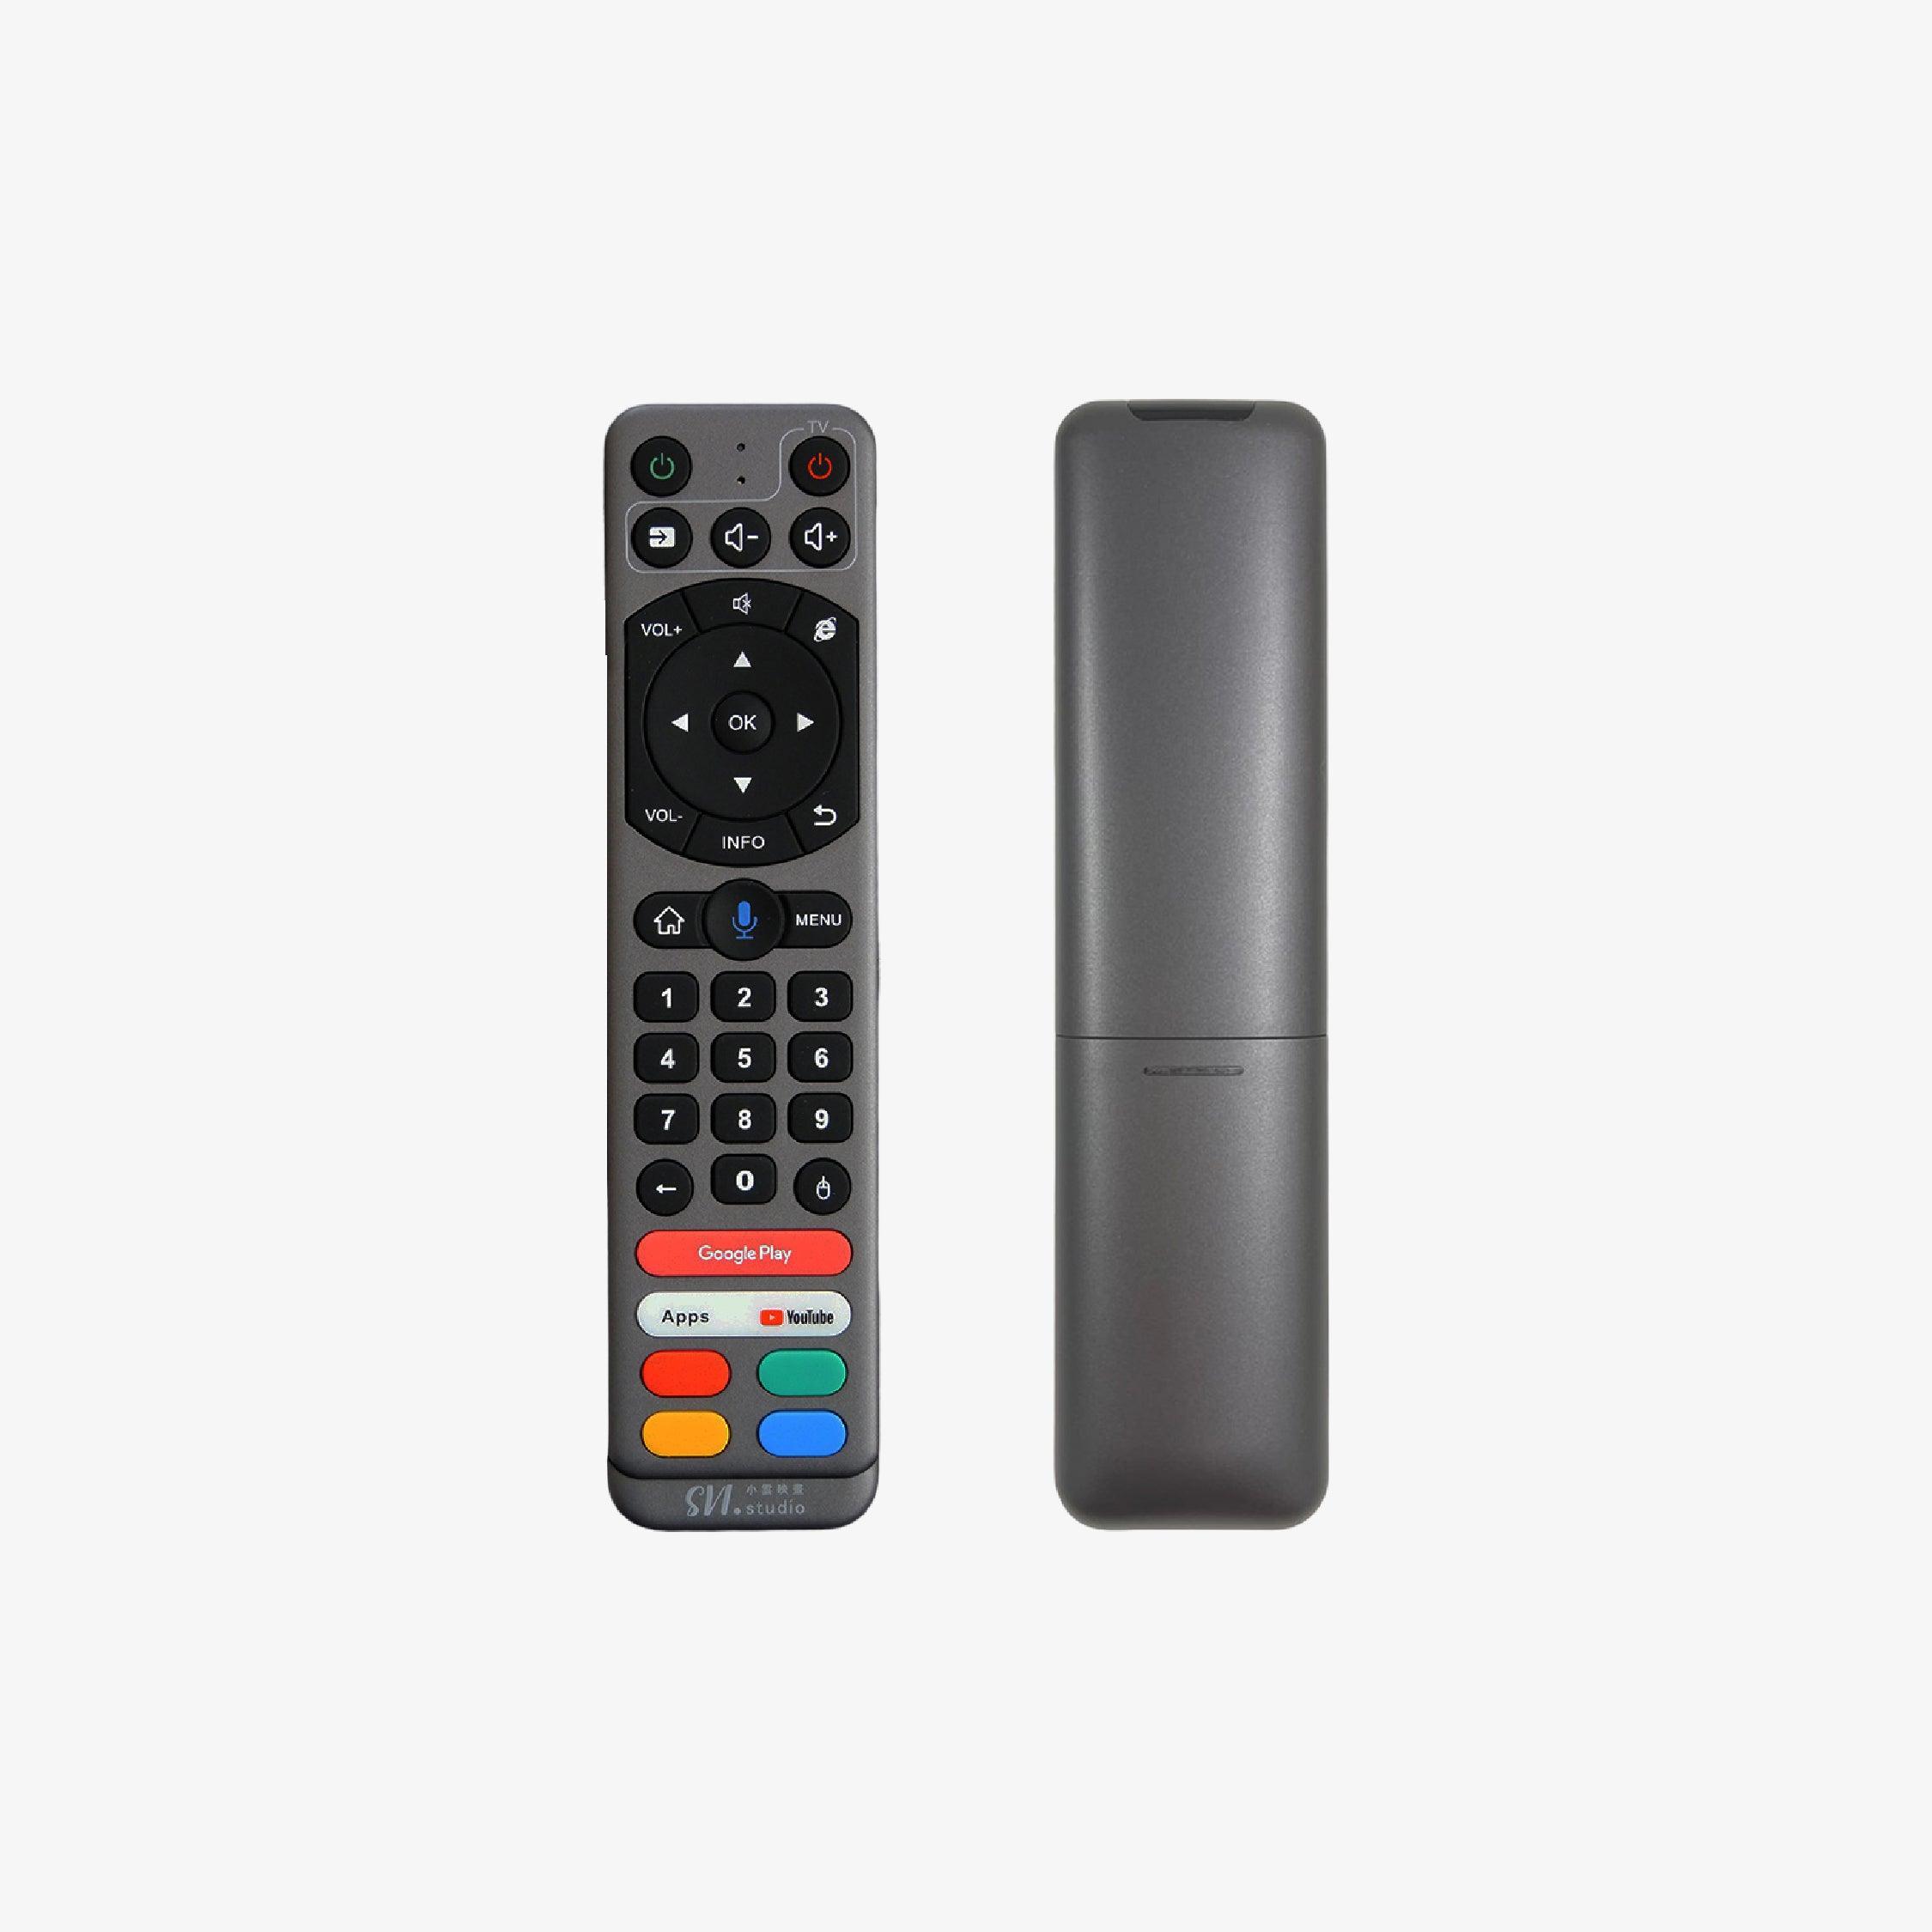 Svicloud Original Smart Voice Search Remote Control Grey(HDMI CEC) - DCTB